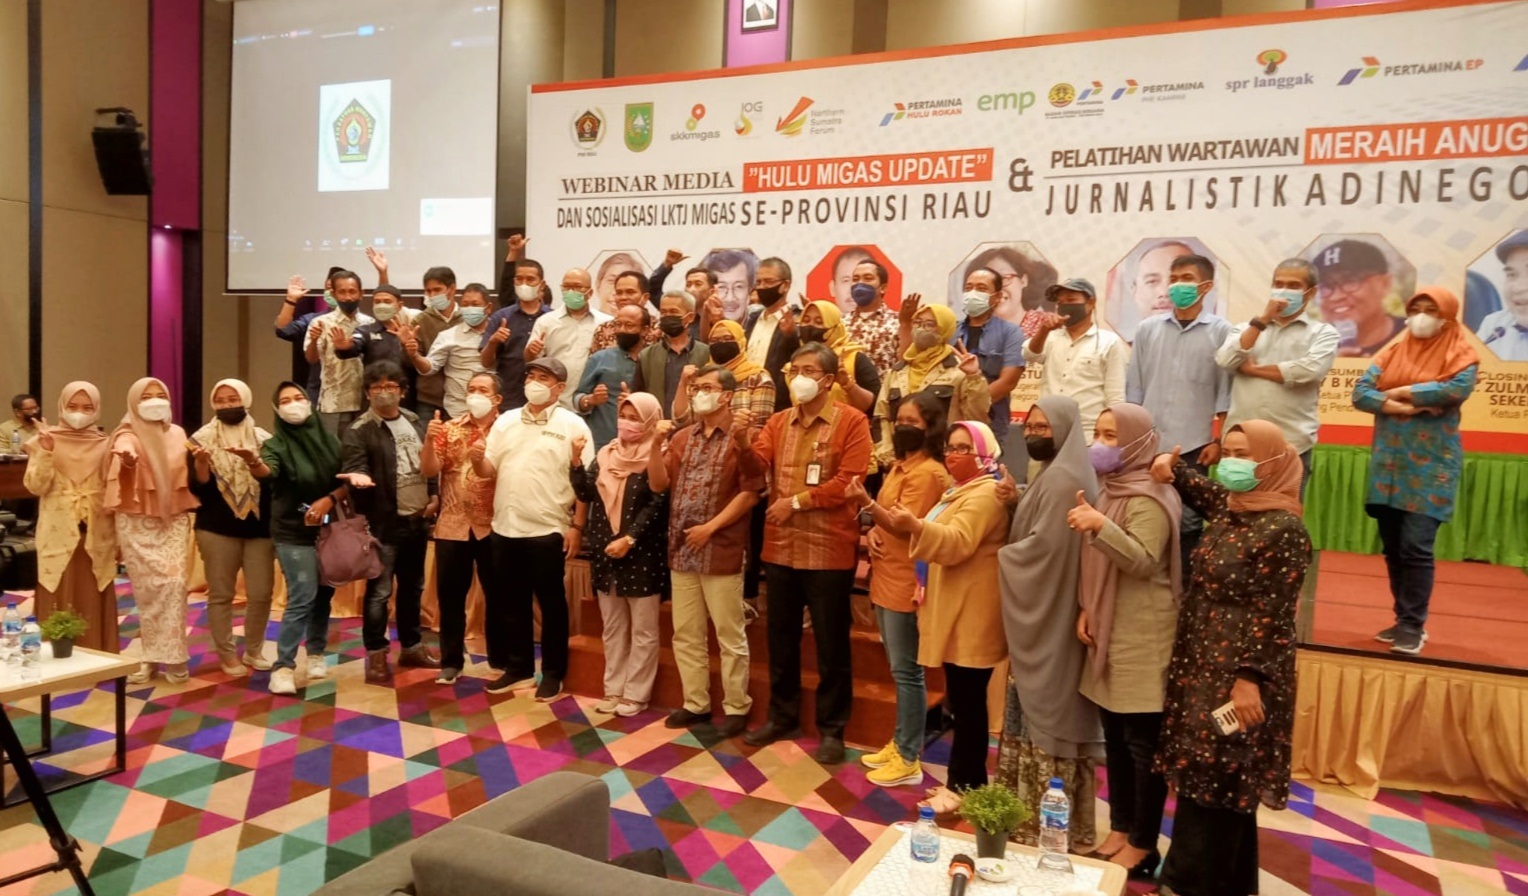 PWI Riau dan SKK Migas Sosialisasi LKTJ Migas dan Anugerah Jurnalistik Adinegoro